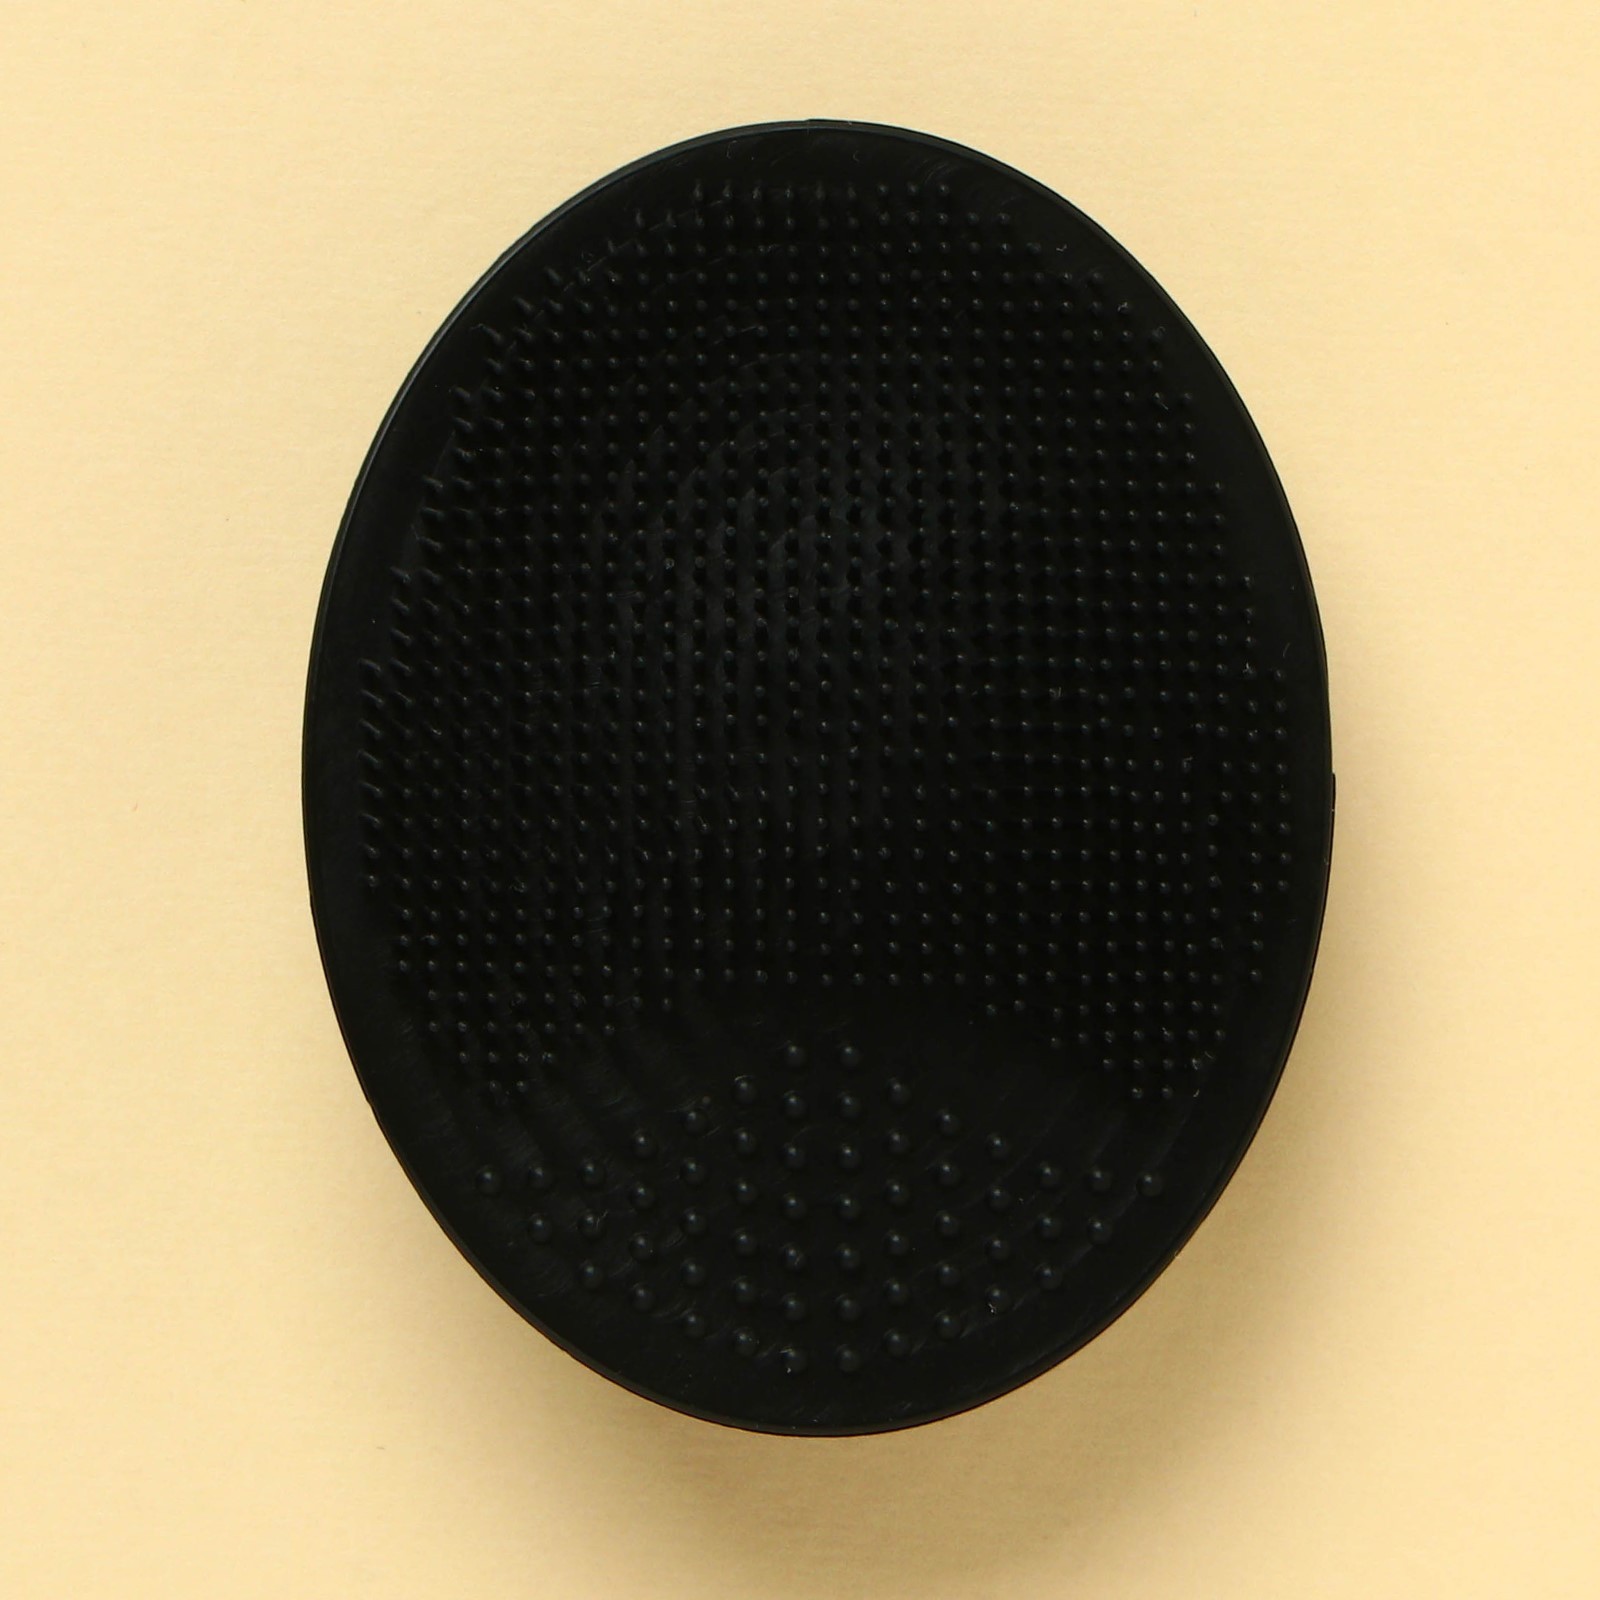 Спонж Art beauty, щёточка для умывания черная, 10,5 х 15 см, 1 шт спонж для умывания art beauty 8 марта силиконовый 6 5 х 5 см